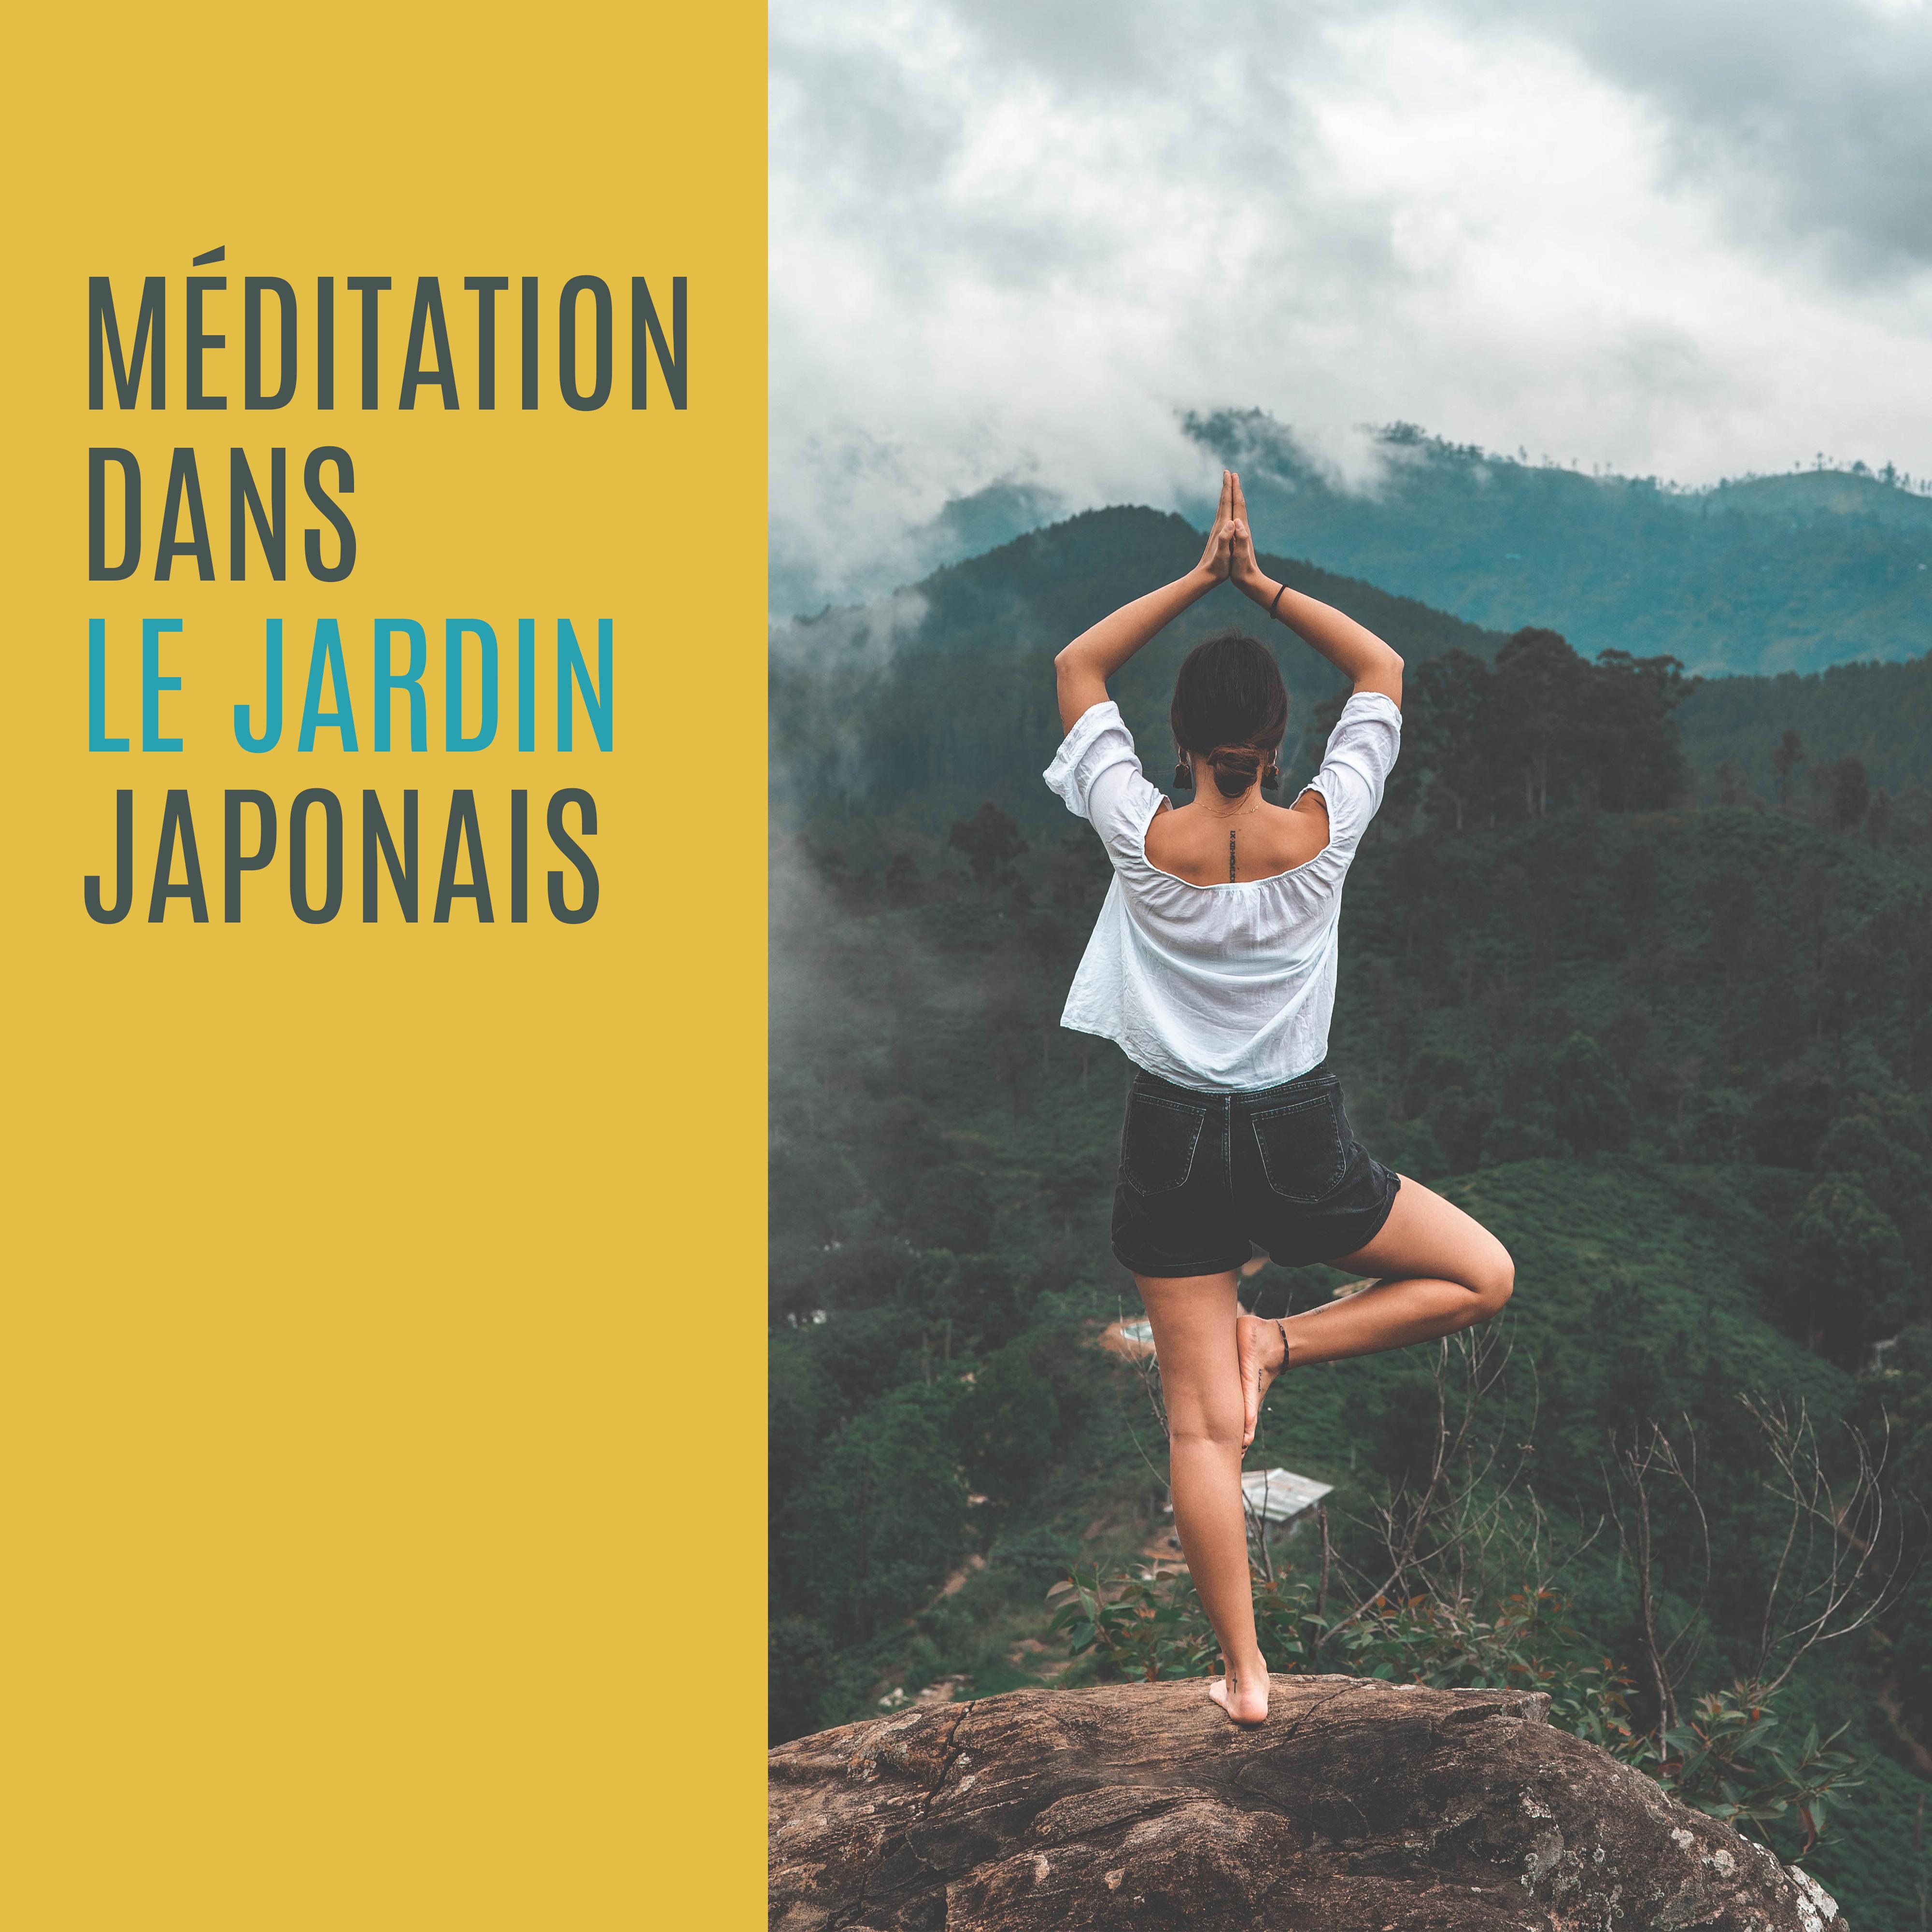 Me ditation dans le Jardin Japonais: 2019 Musique New Age pour le Yoga et la Relaxation Profonde